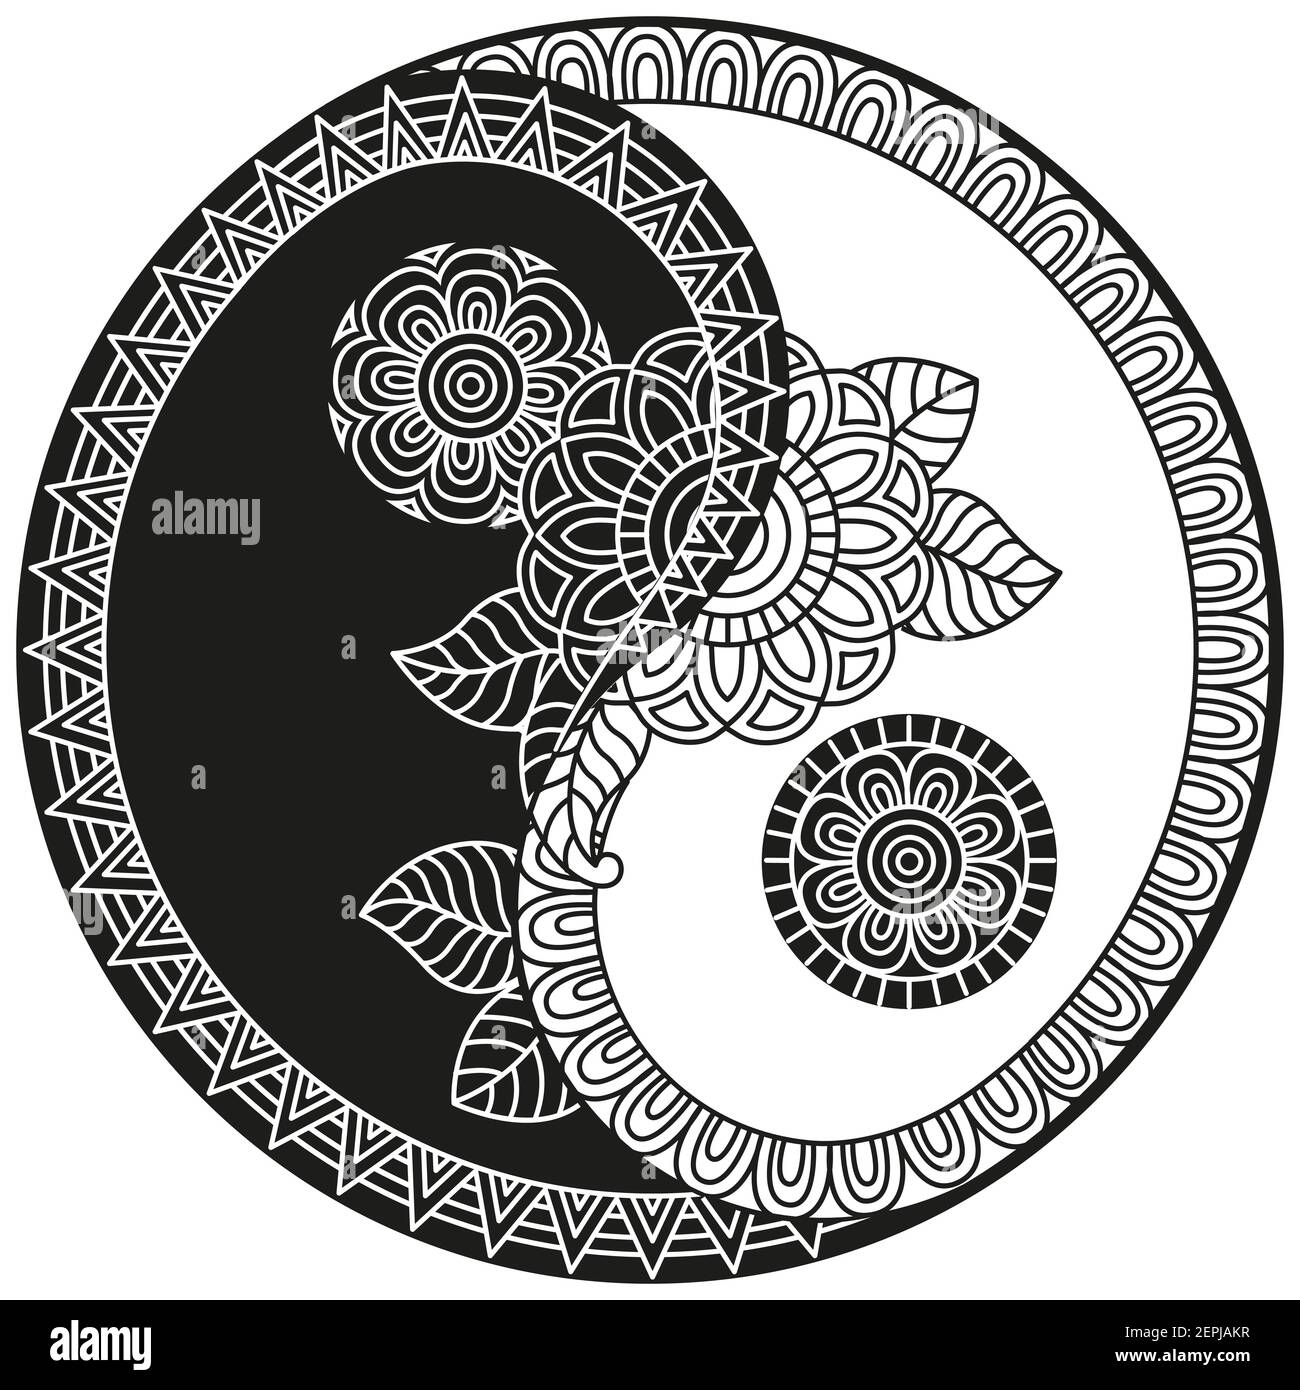 Symbole vecteur Yin-Yang. Livre de coloriage pour adulte de style oriental avec fleurs et ornements floraux ethniques. Motif de mandala circulaire pour henné, mehndi Illustration de Vecteur